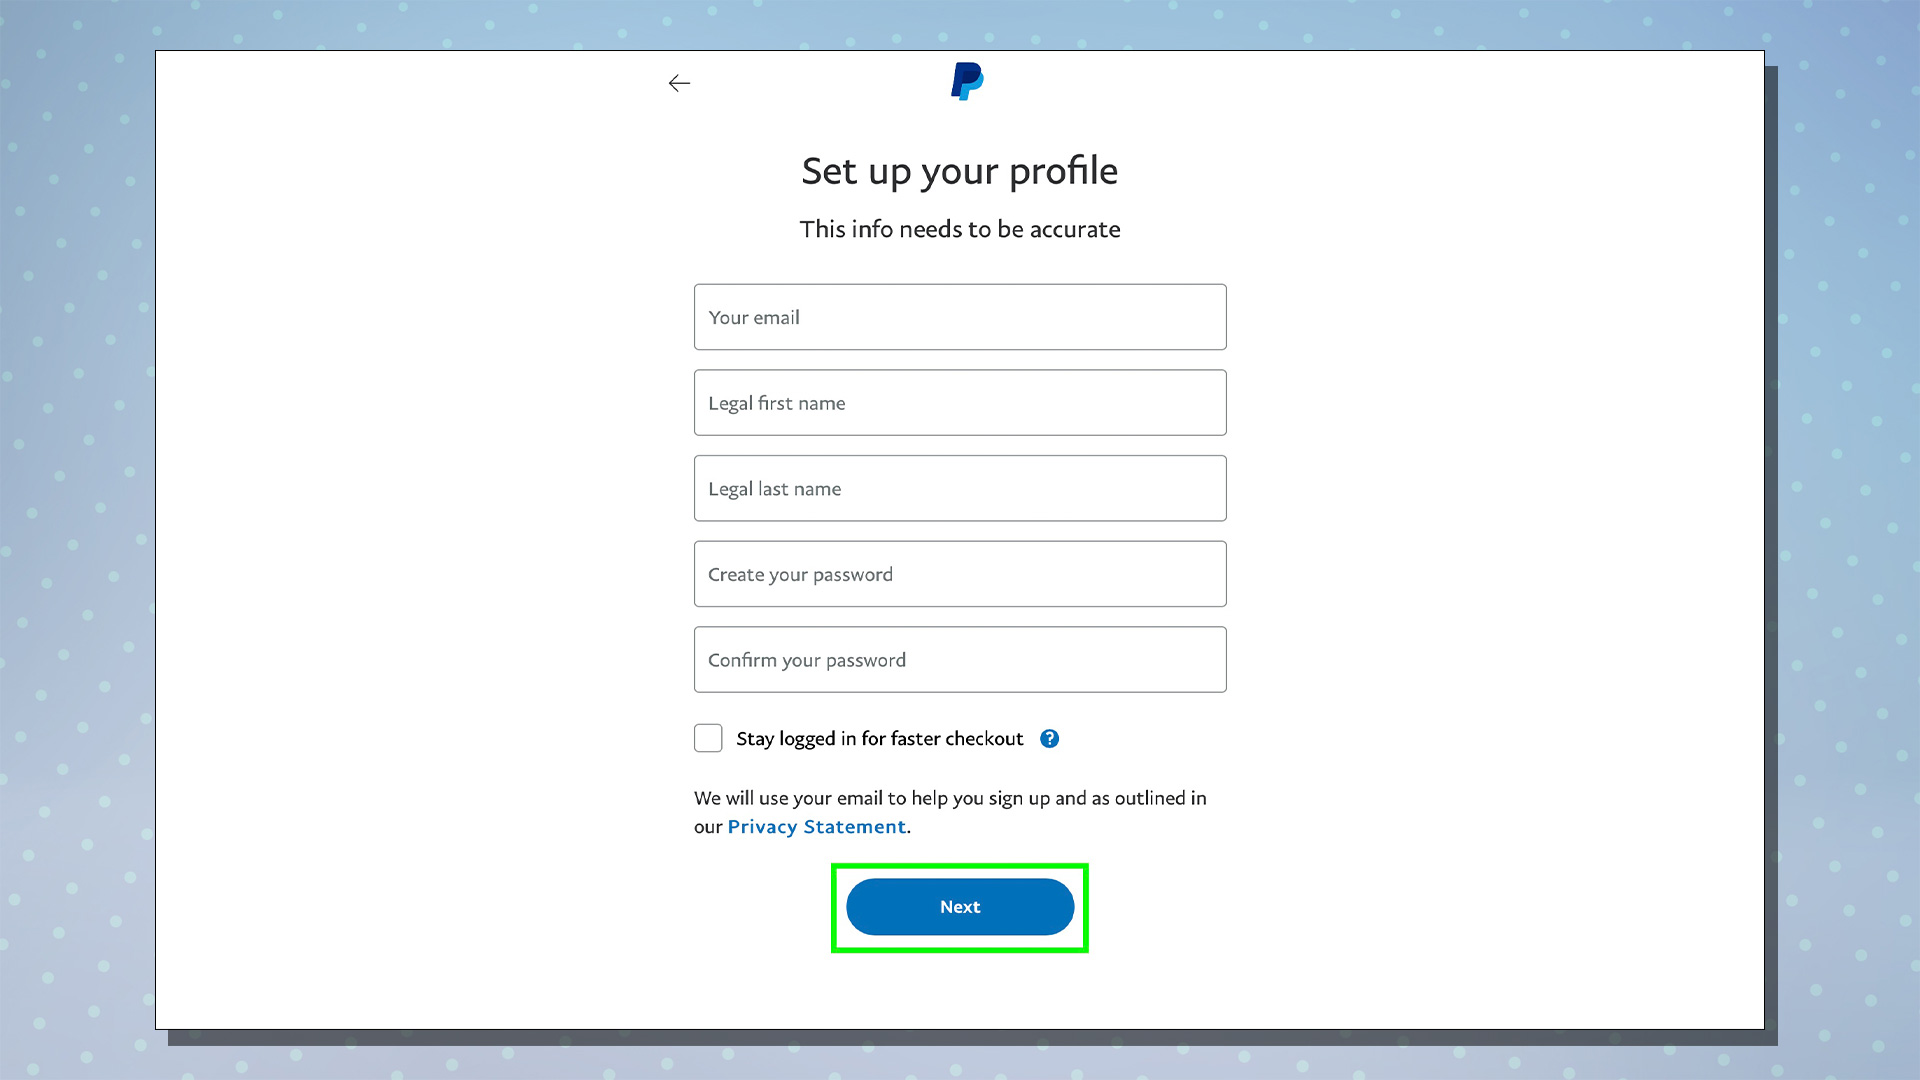 PayPal kurulum sürecini gösteren bir ekran görüntüsü.  Bu ekran, kullanıcı profili ekranını gösterir.